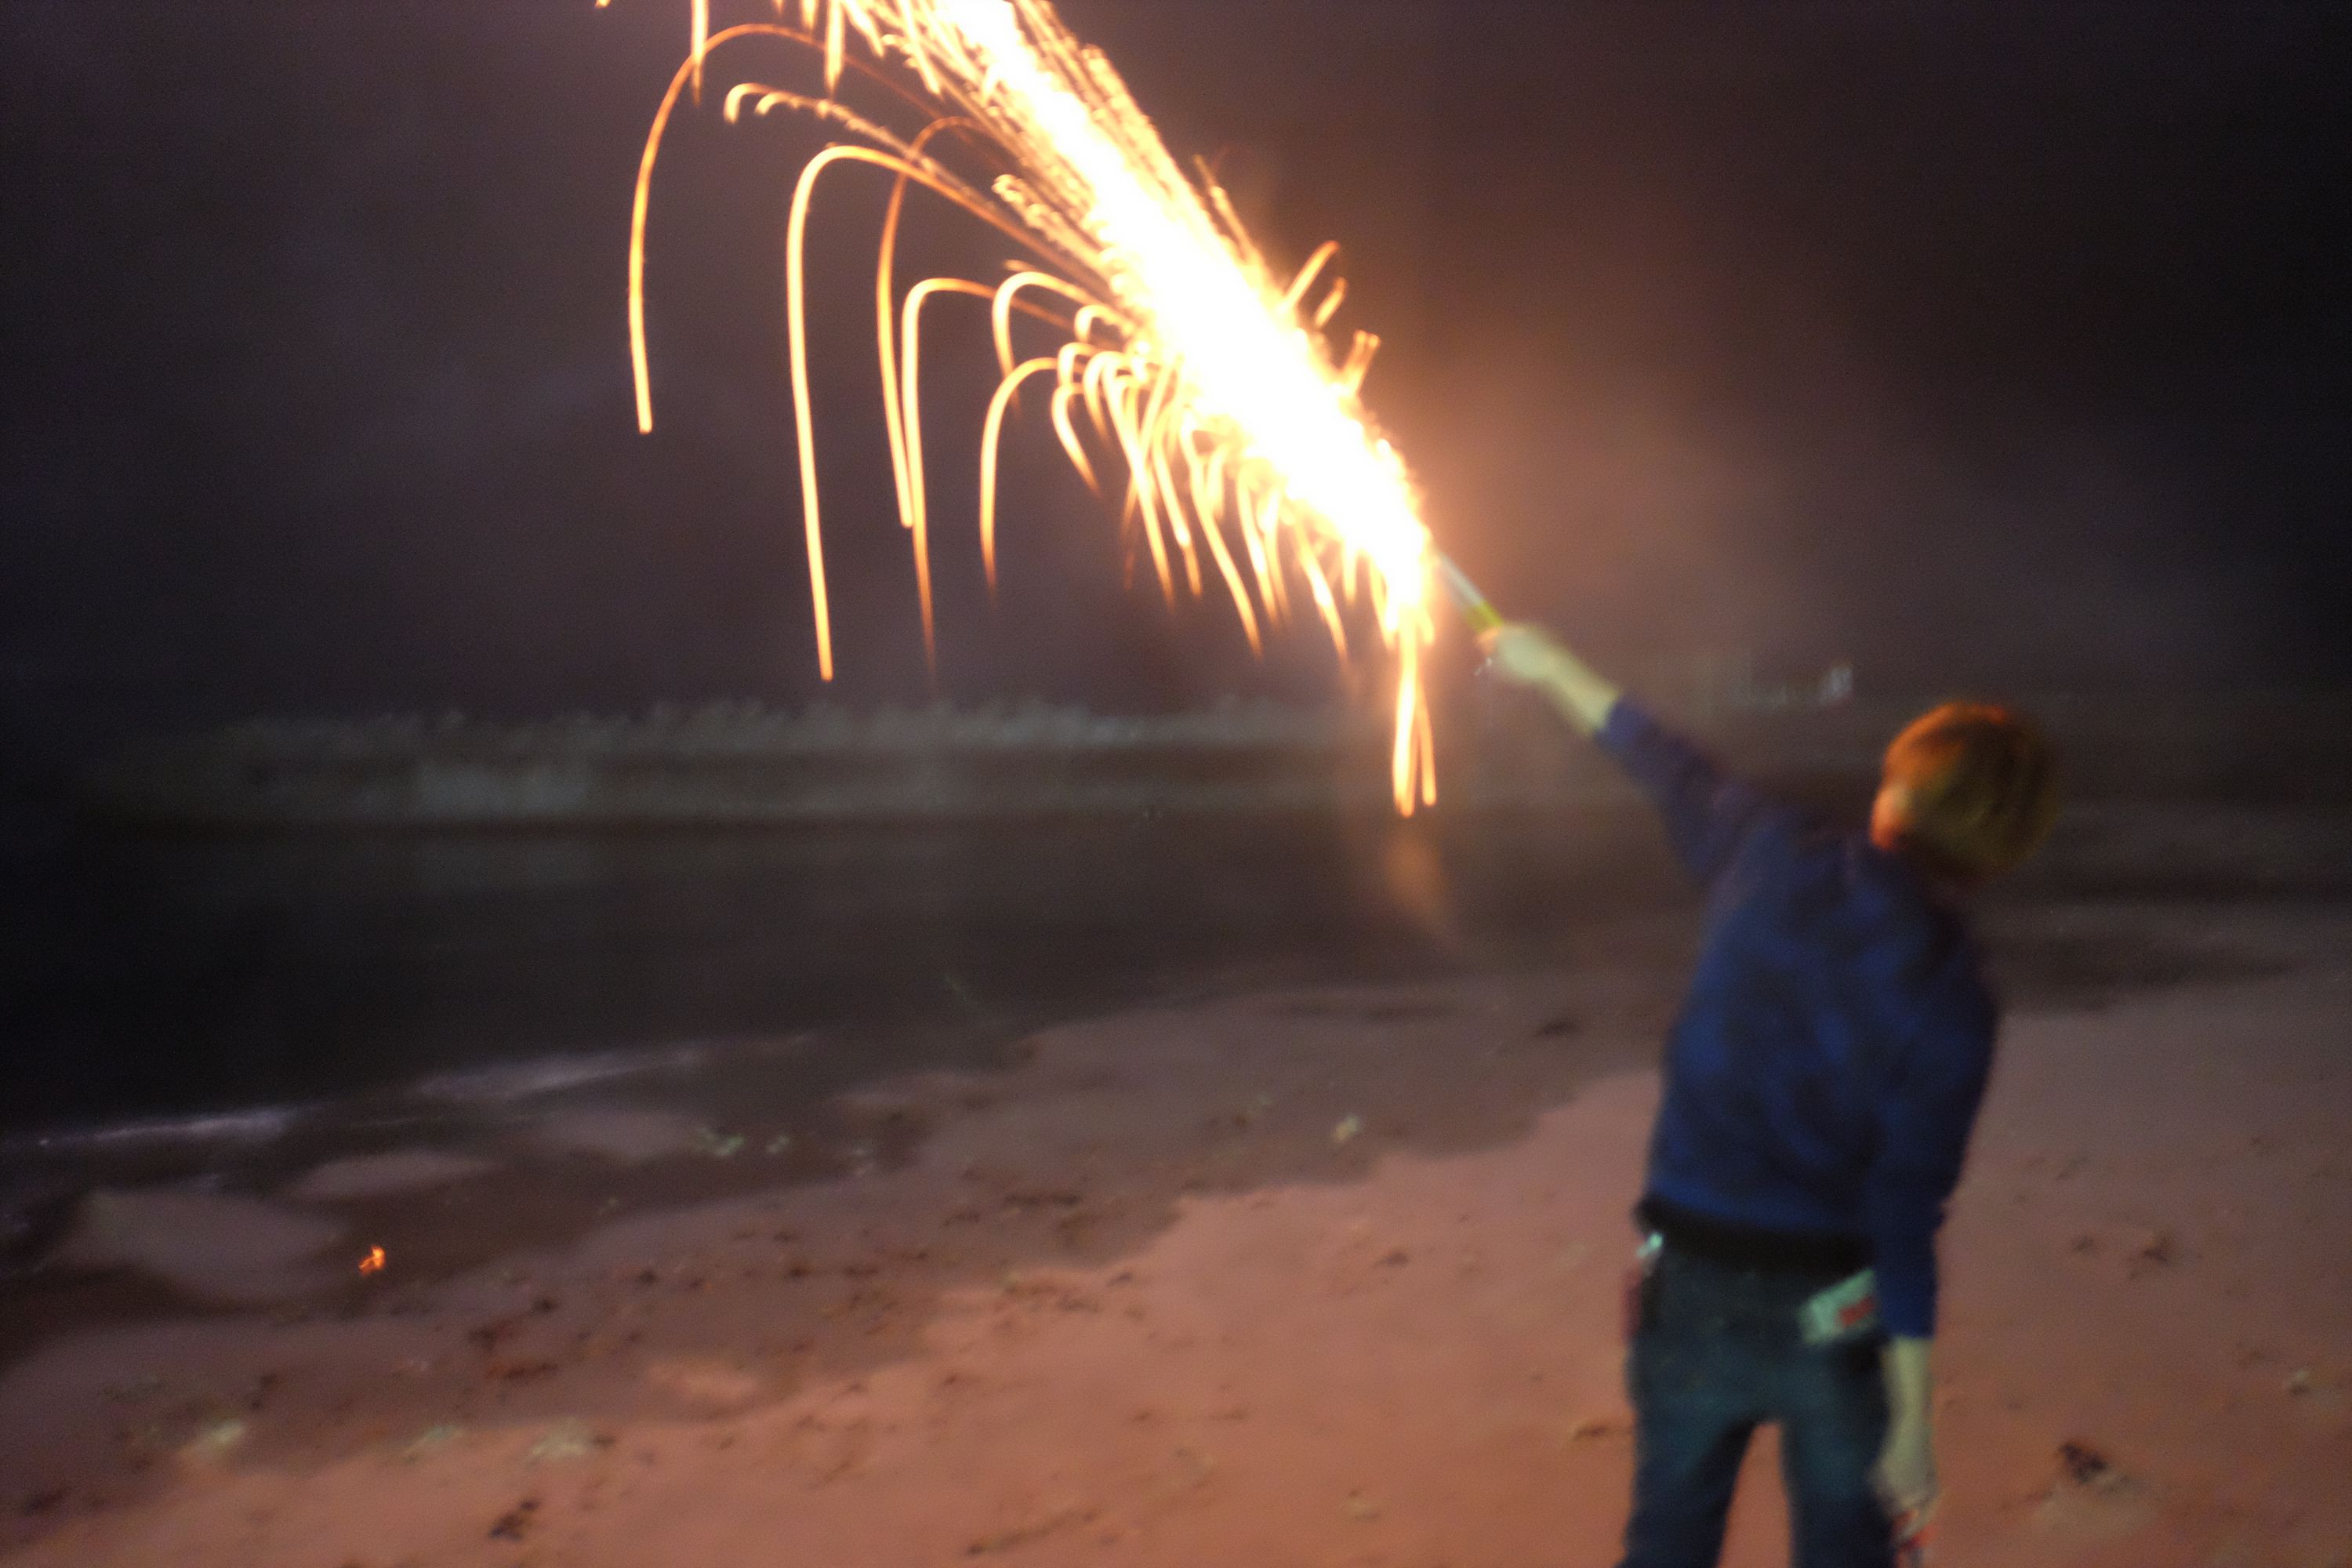 A boy shoots a firecracker on a beach.